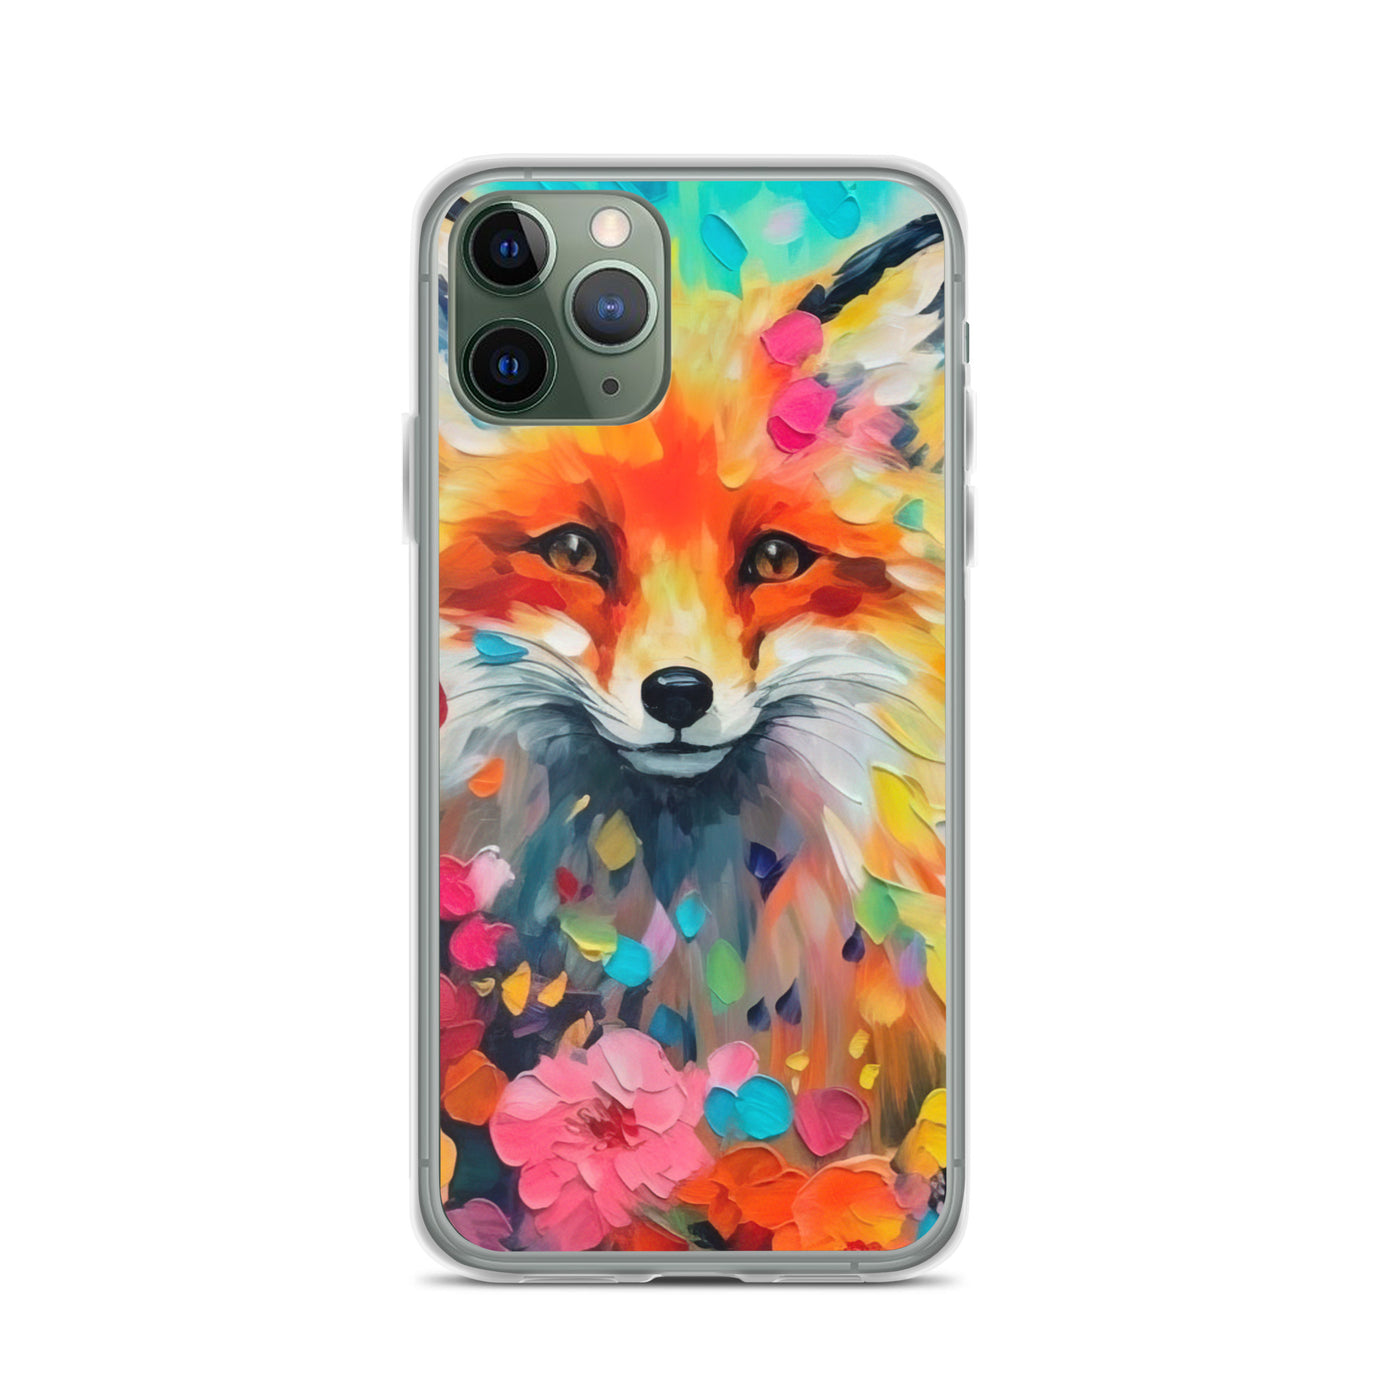 Schöner Fuchs im Blumenfeld - Farbige Malerei - iPhone Schutzhülle (durchsichtig) camping xxx iPhone 11 Pro